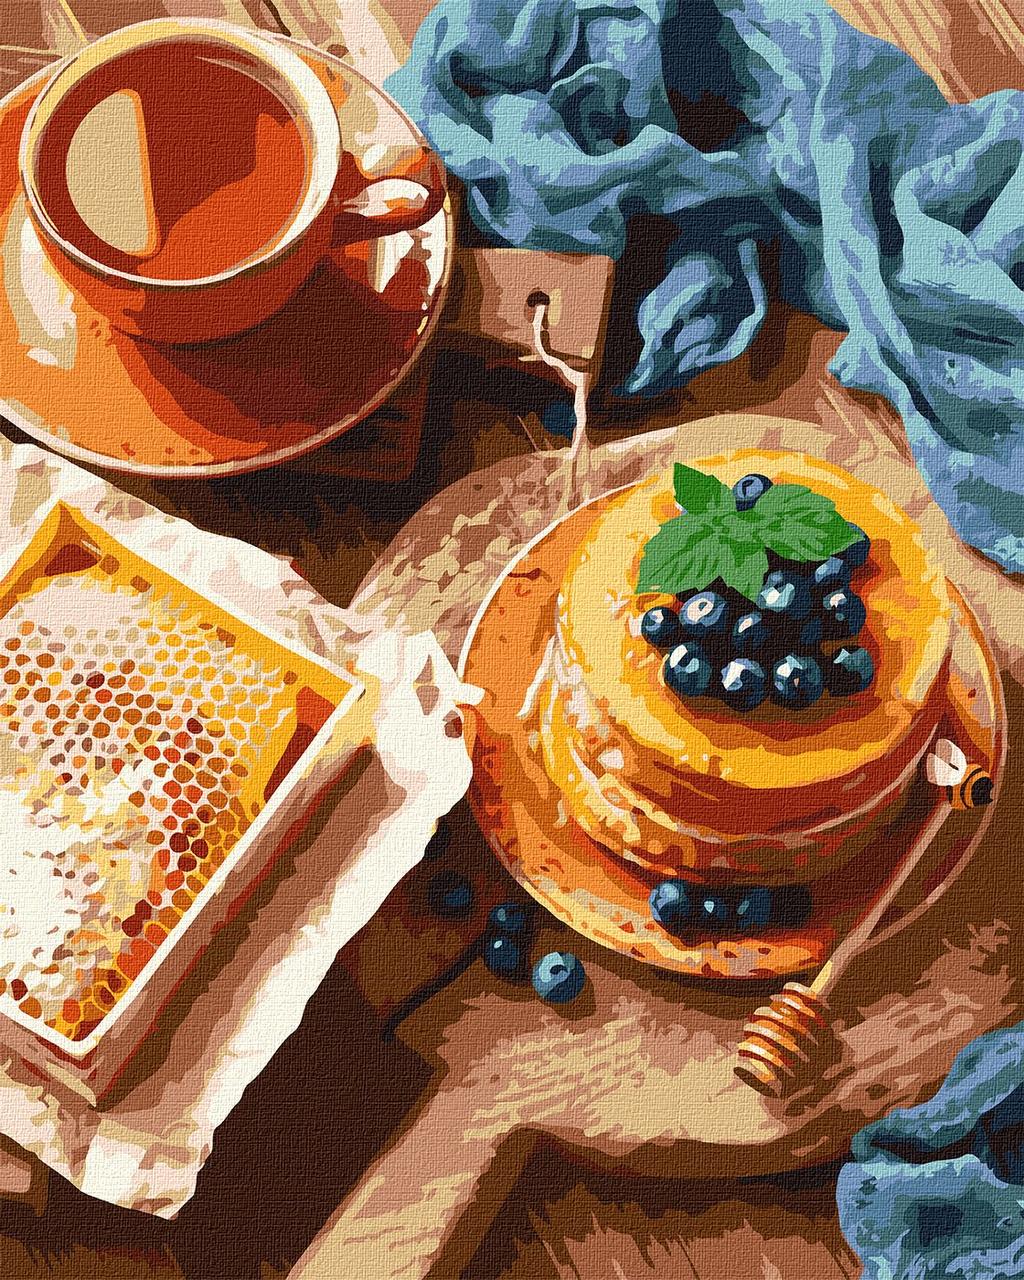 Картина по номерам панкейк 40 х 50 см Ідейка KHO5641 "Панкейки до чаю" melmil, фото 1